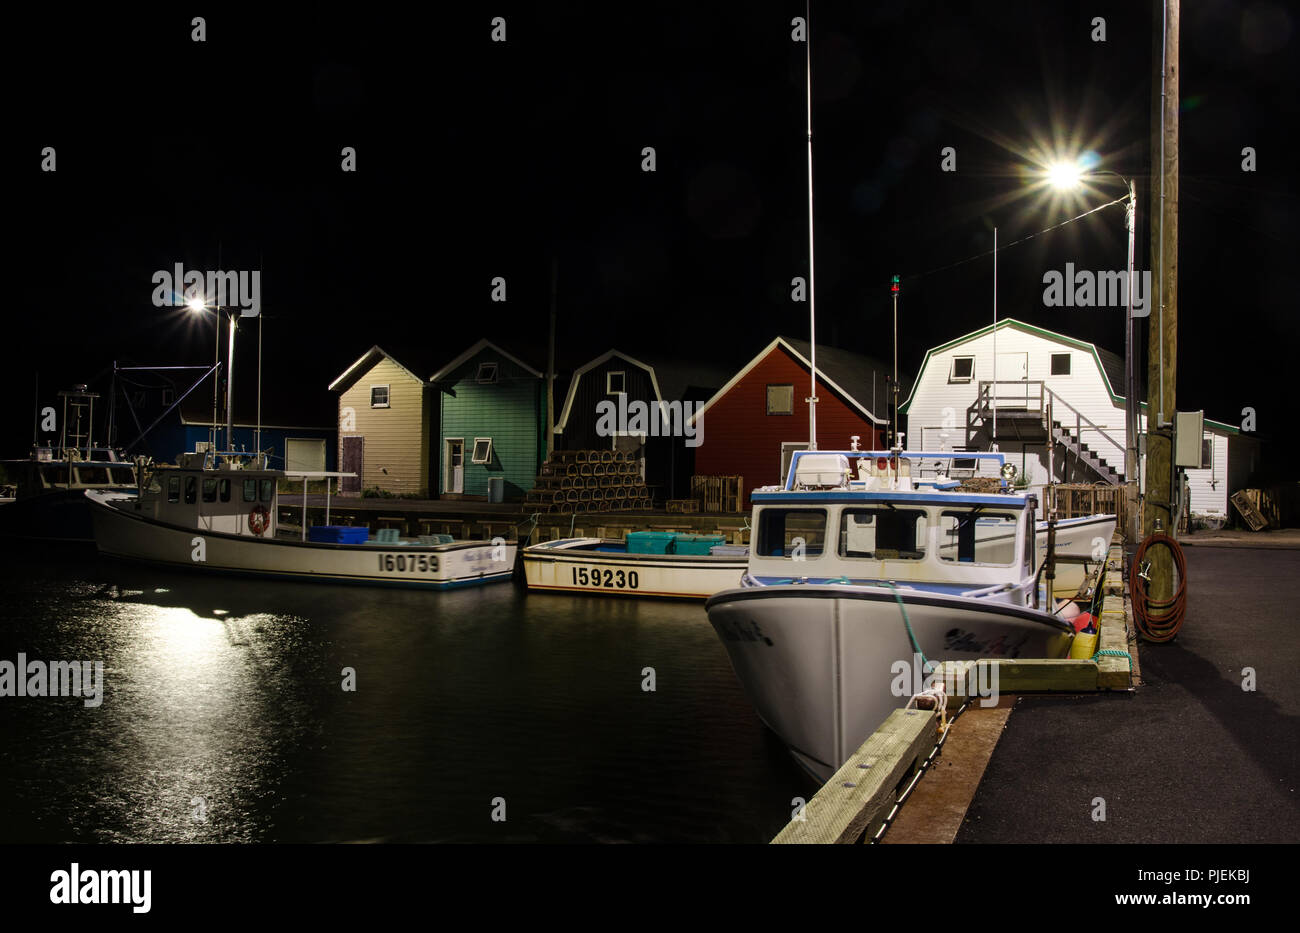 French River Harbour, Gebäude, Ausrüstung und Boote in der Nacht fotografiert. Stockfoto